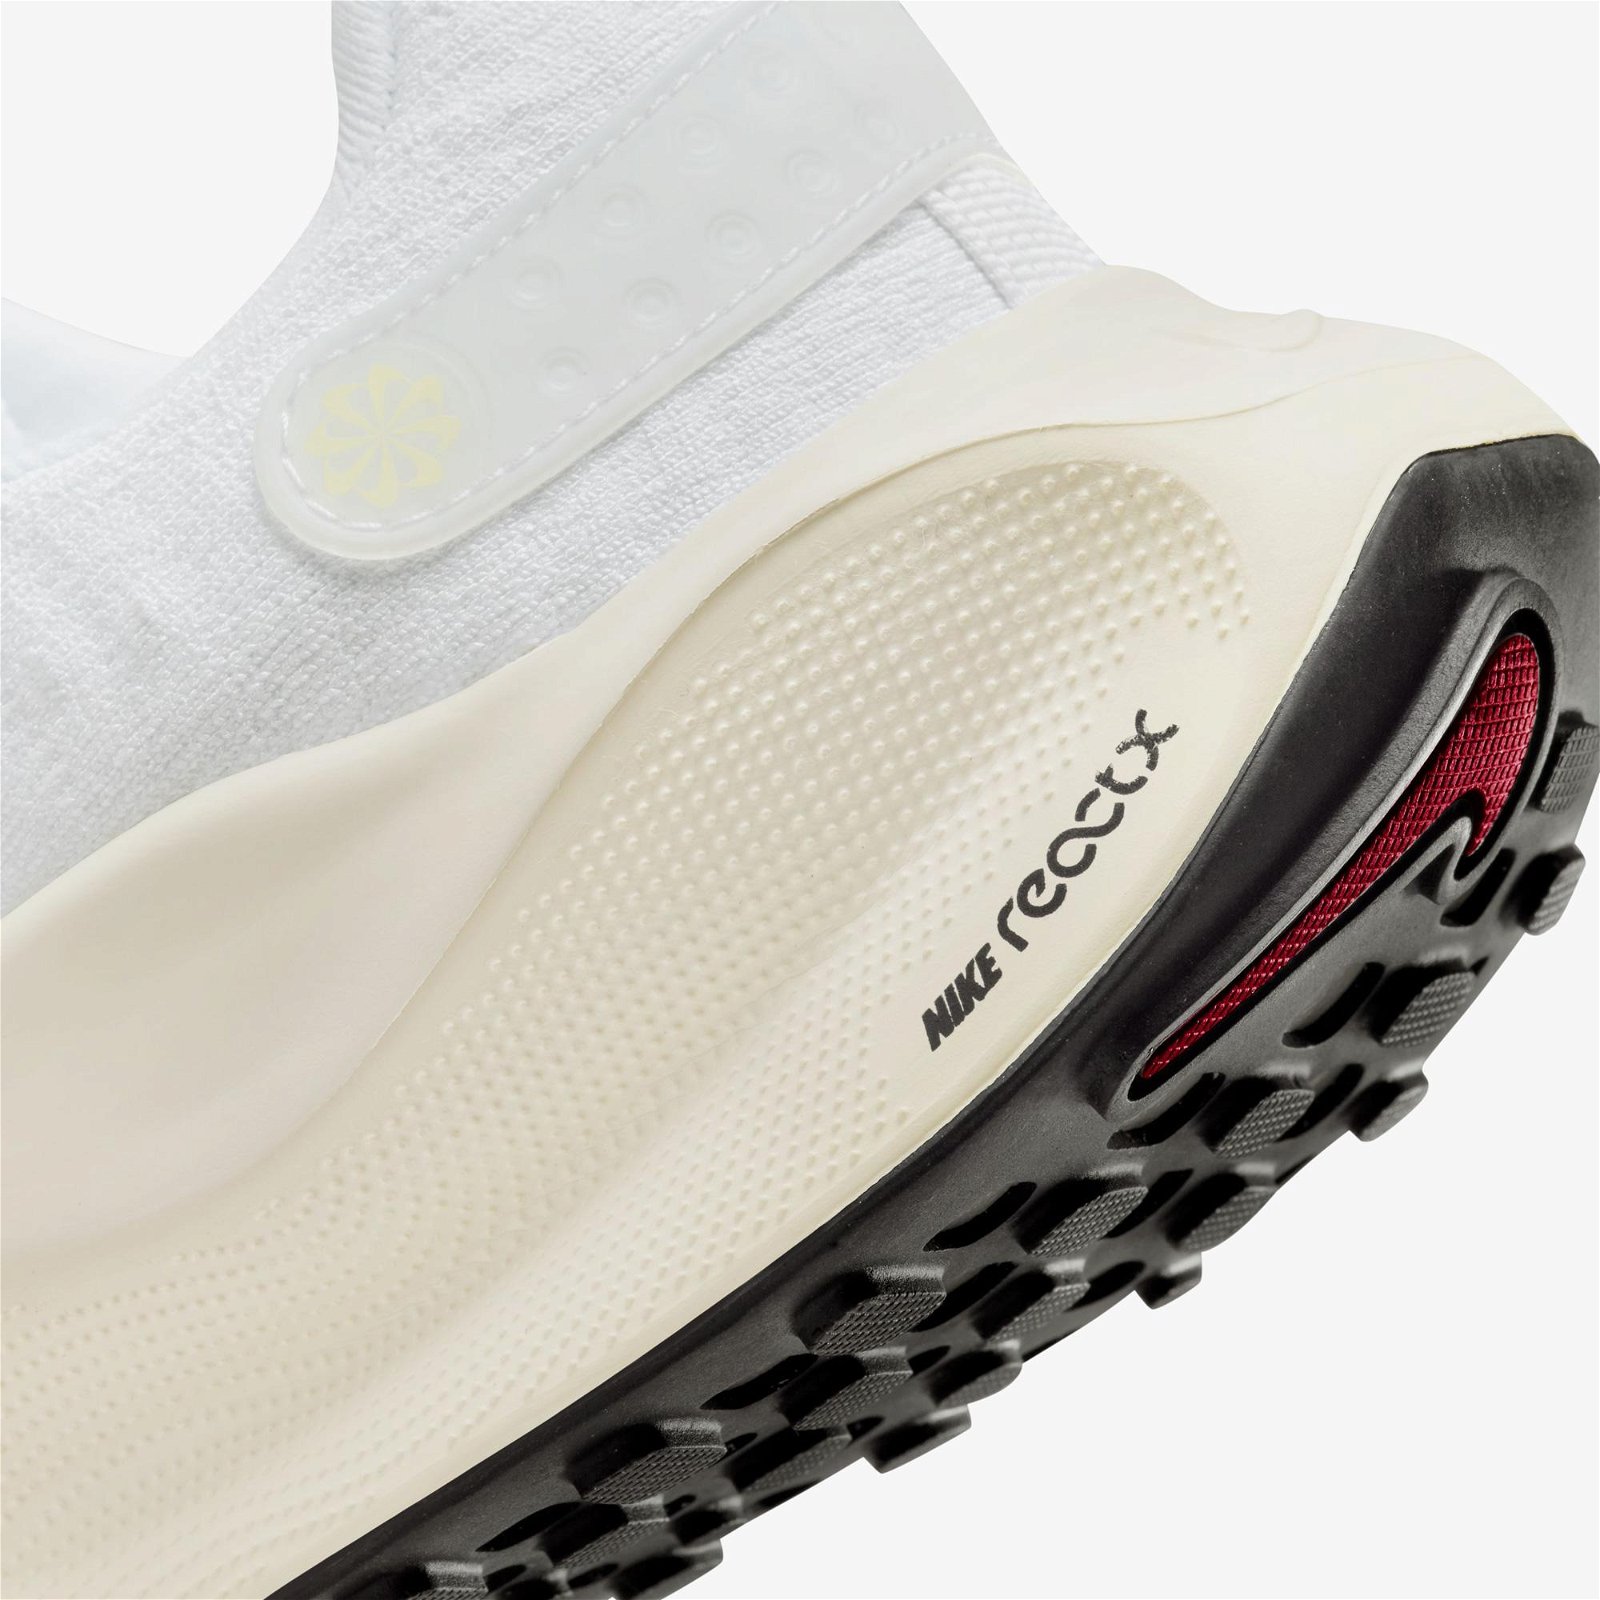 Nike Reactx Infinity Run 4 Kadın Beyaz Spor Ayakkabı